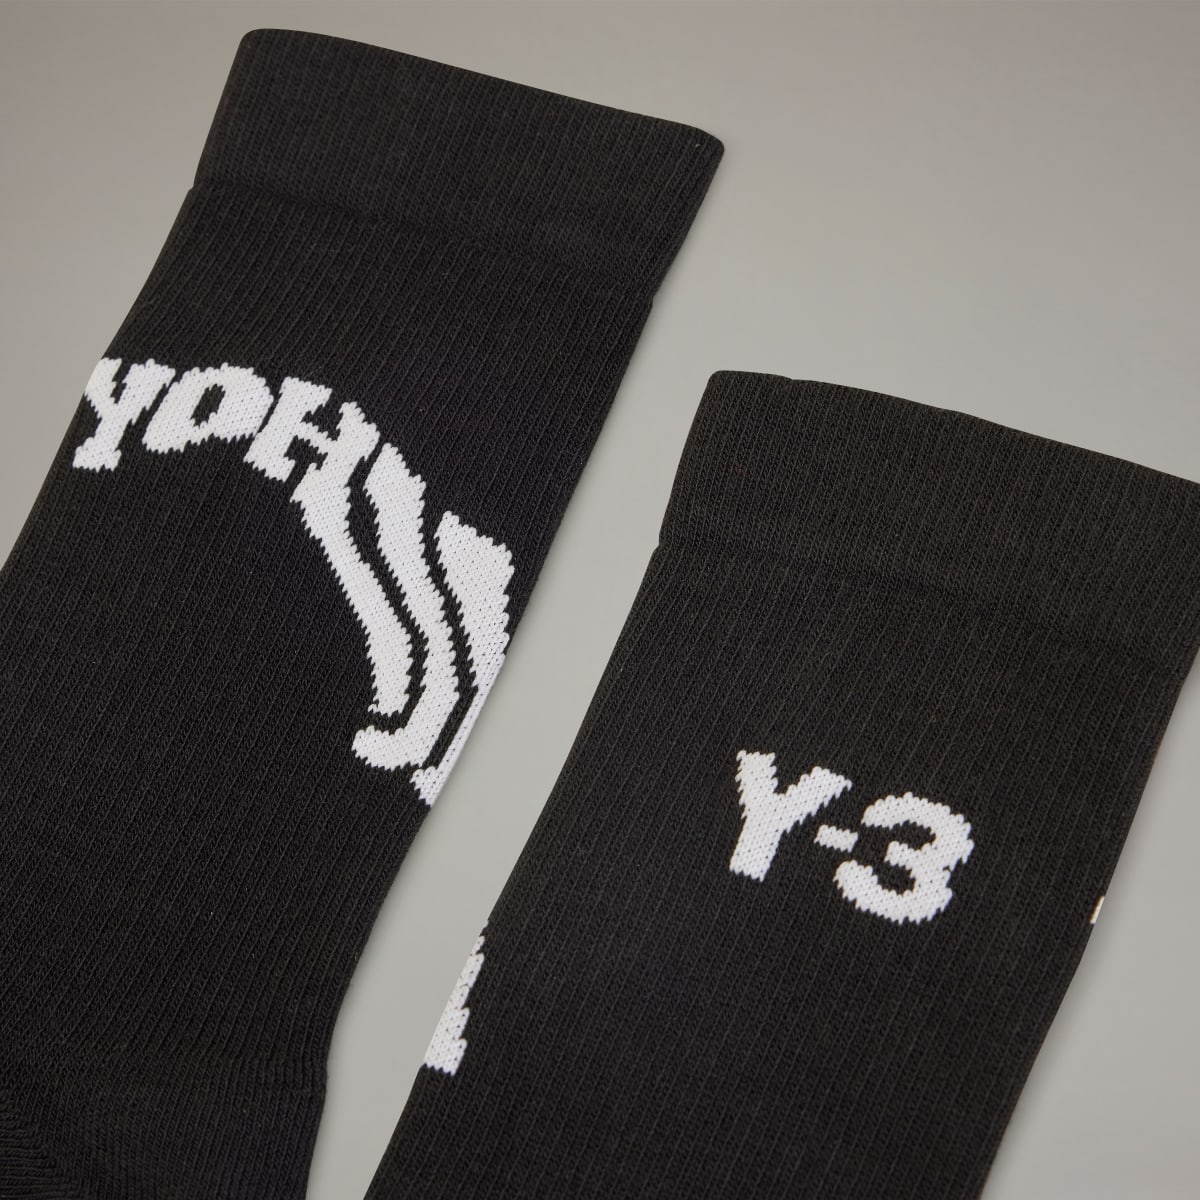 Adidas Y-3 Crew Socks. 4